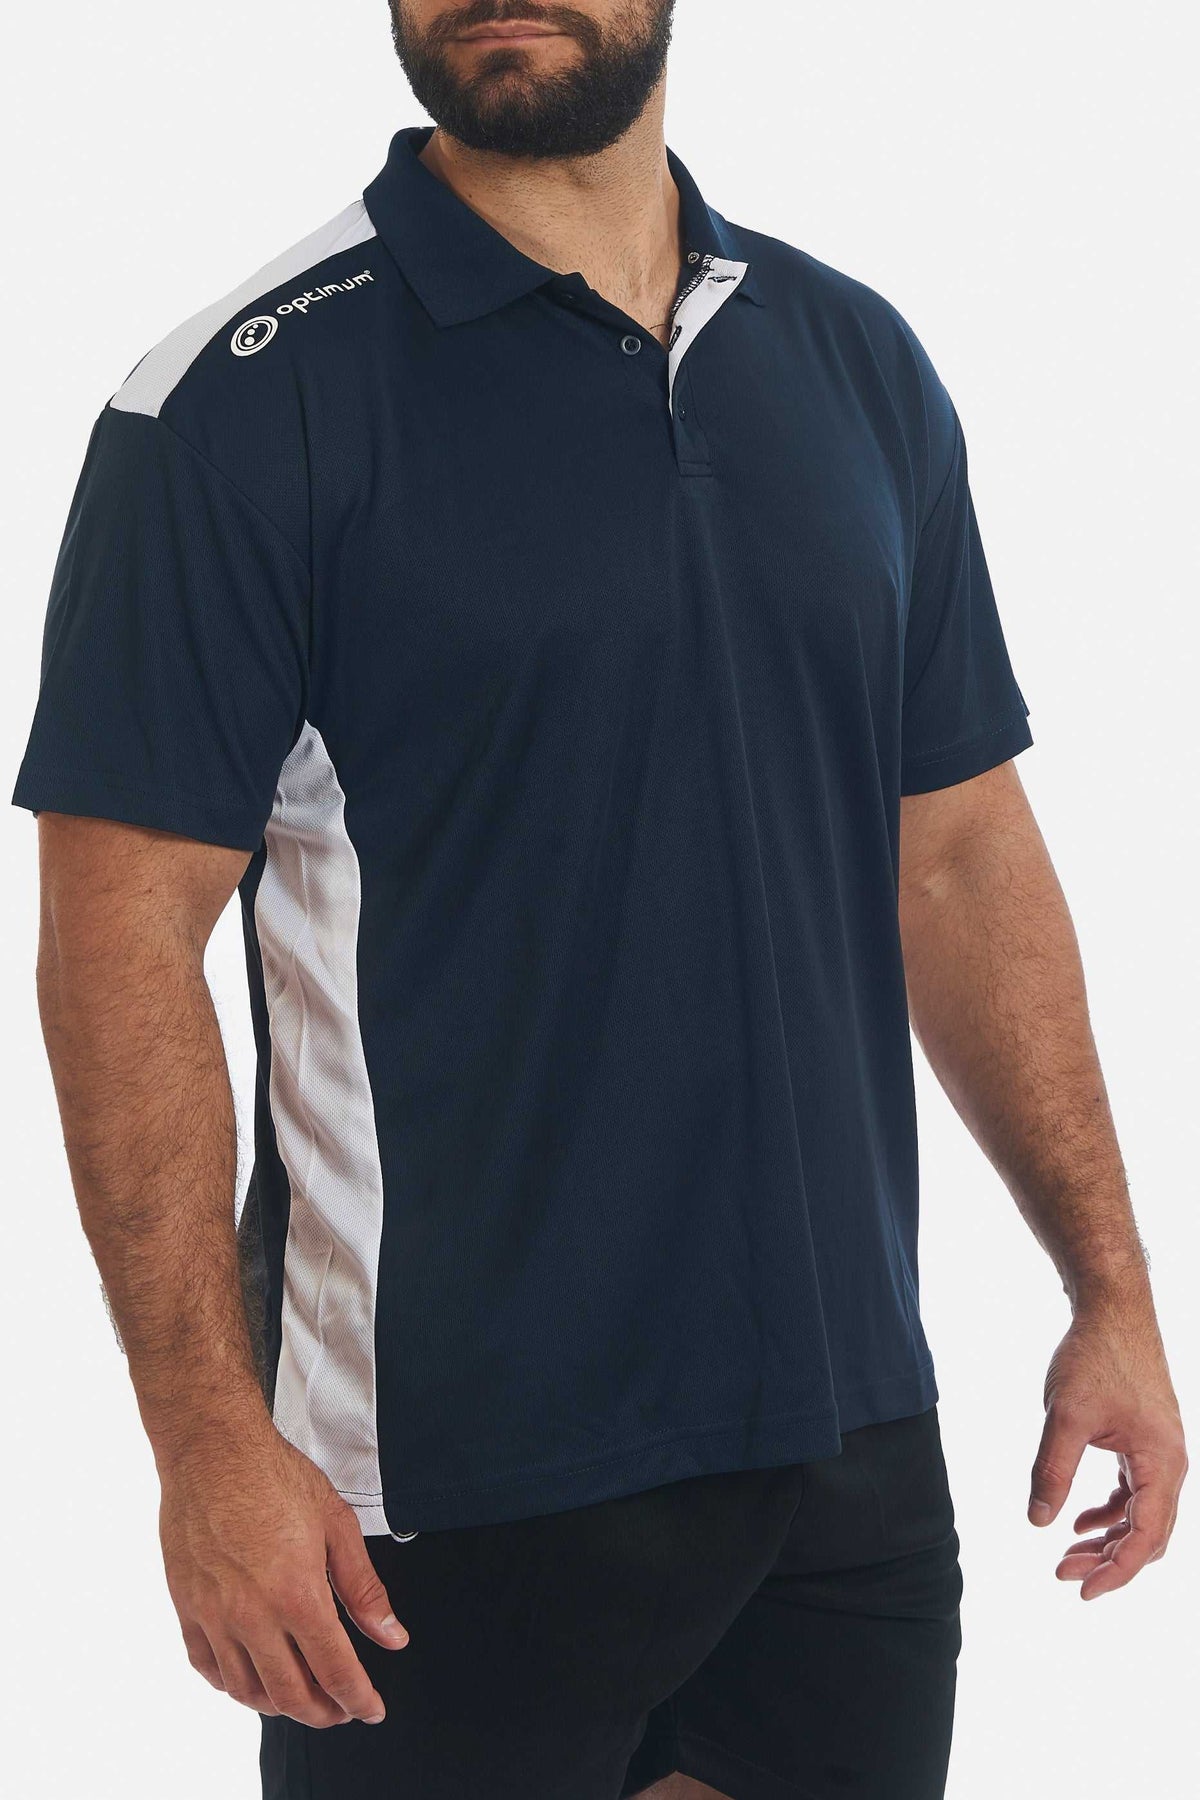 Tempo Polo Navy Polo T-Shirts